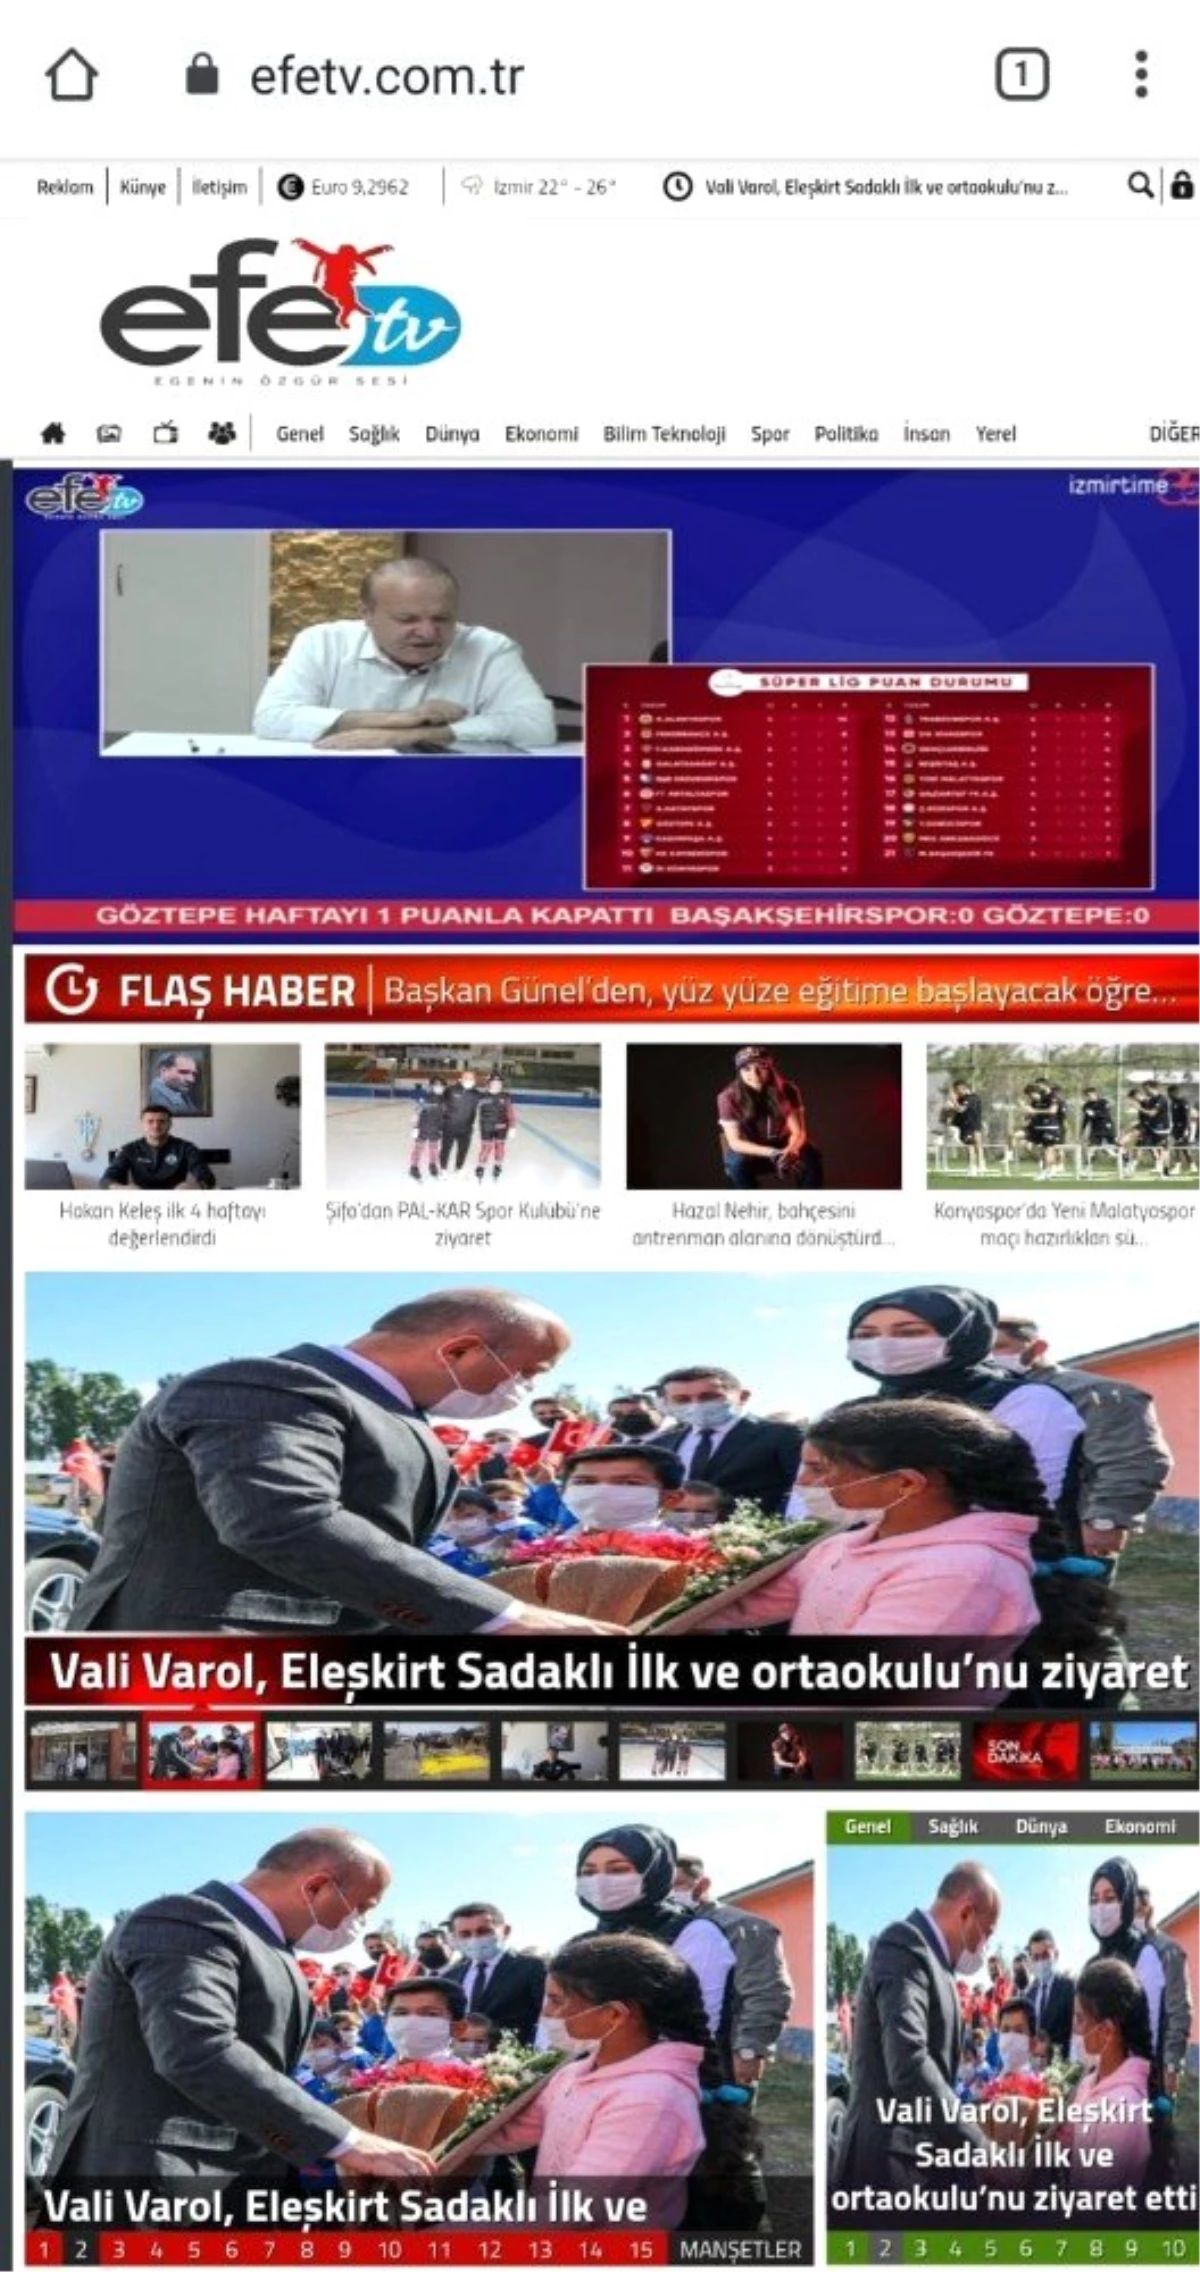 Aydın\'da Efe Tv, yeni nesil televizyon yayıncılığı başladı